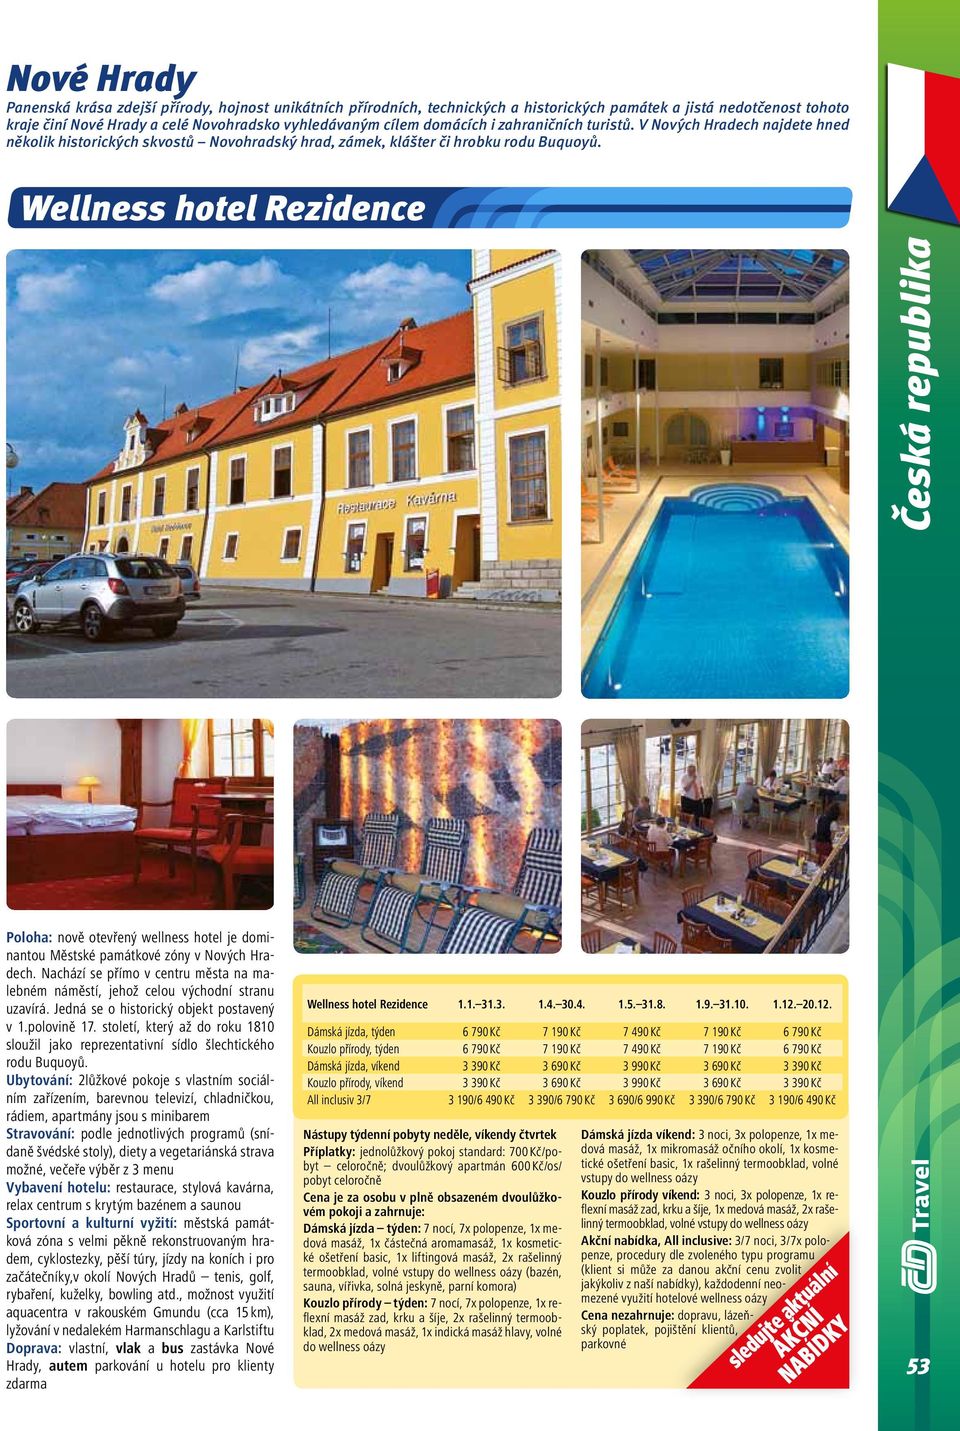 Wellness hotel Rezidence Česká republika Poloha: nově otevřený wellness hotel je dominantou Městské památkové zóny v Nových Hradech.